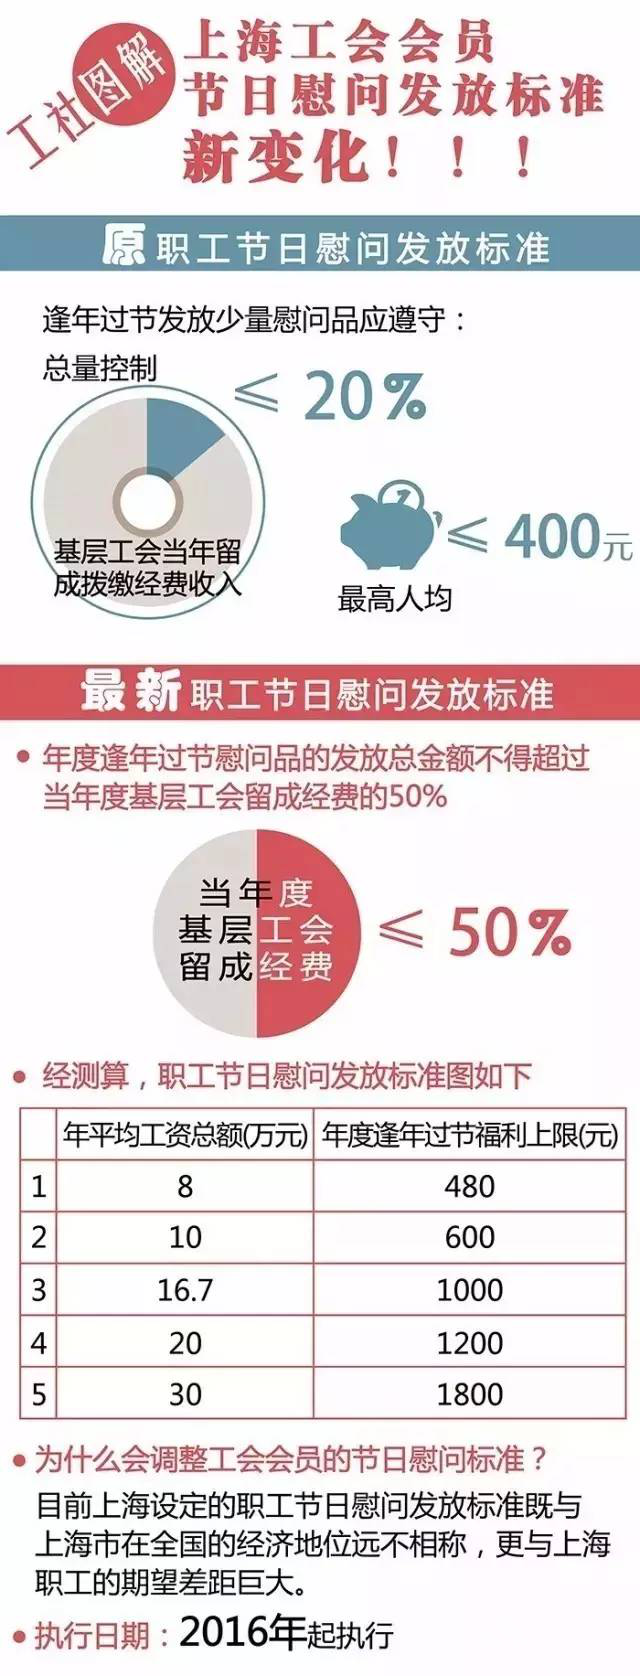 上海热线房产频道--上海大幅提高职工福利标准